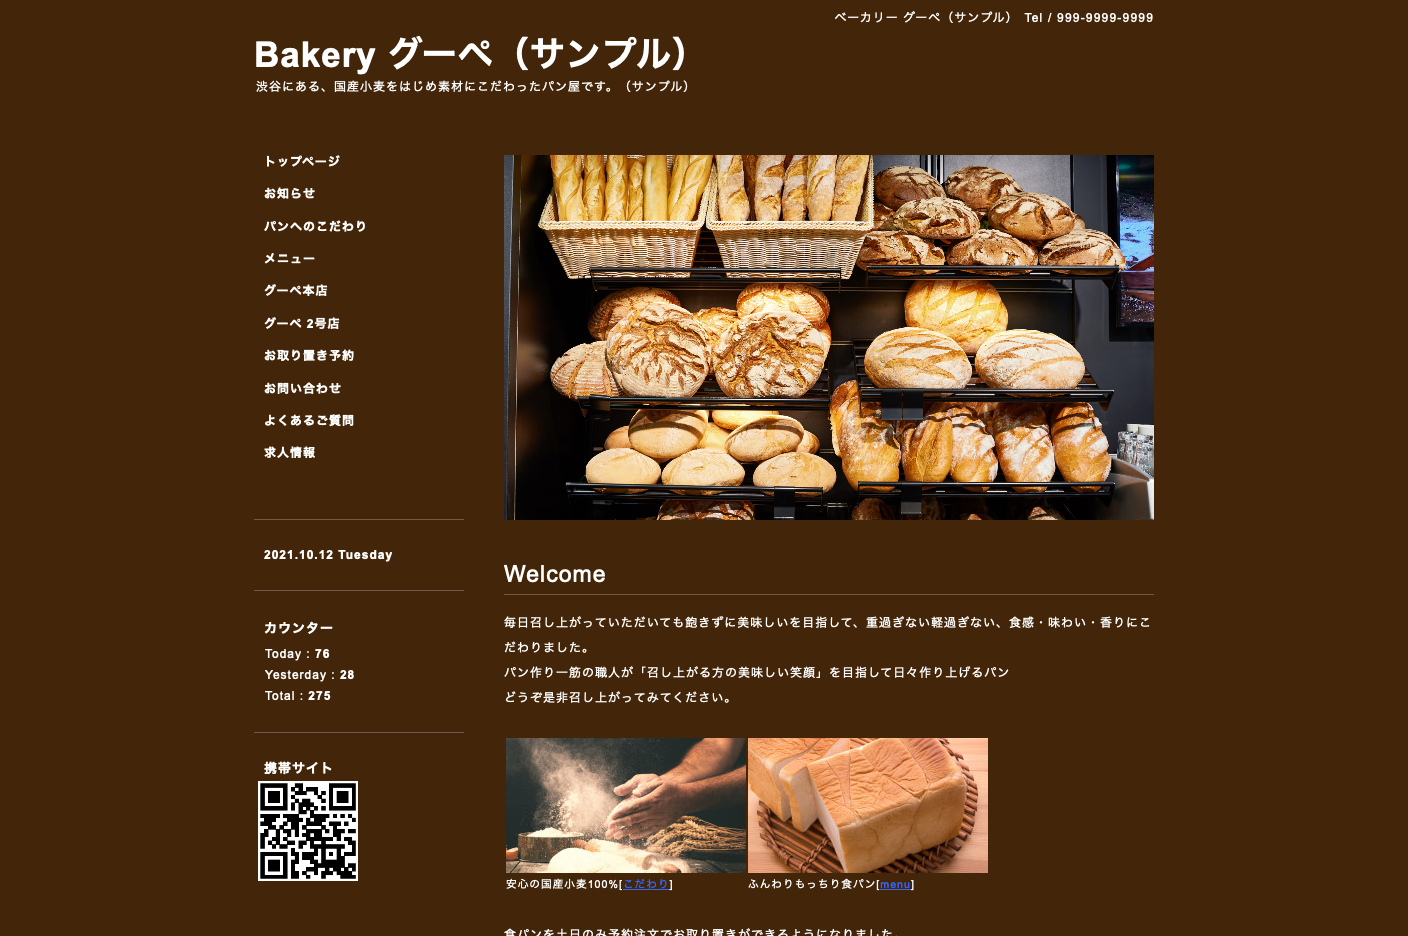 事例つき パン屋 ベーカリーのホームページ作成のコツ 自分で制作 運営できる作り方を解説グーペノート